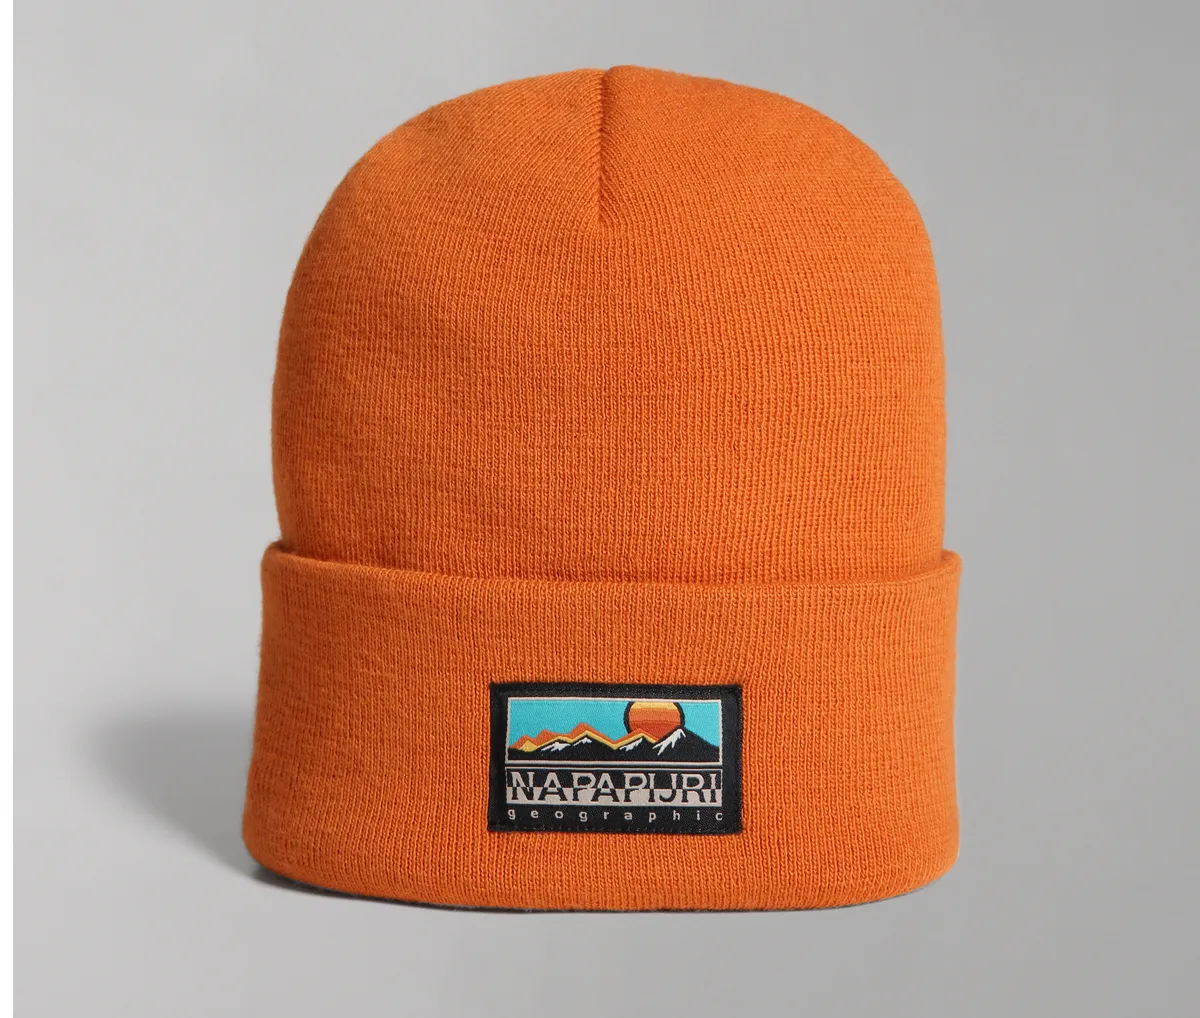 Orange beanie hat